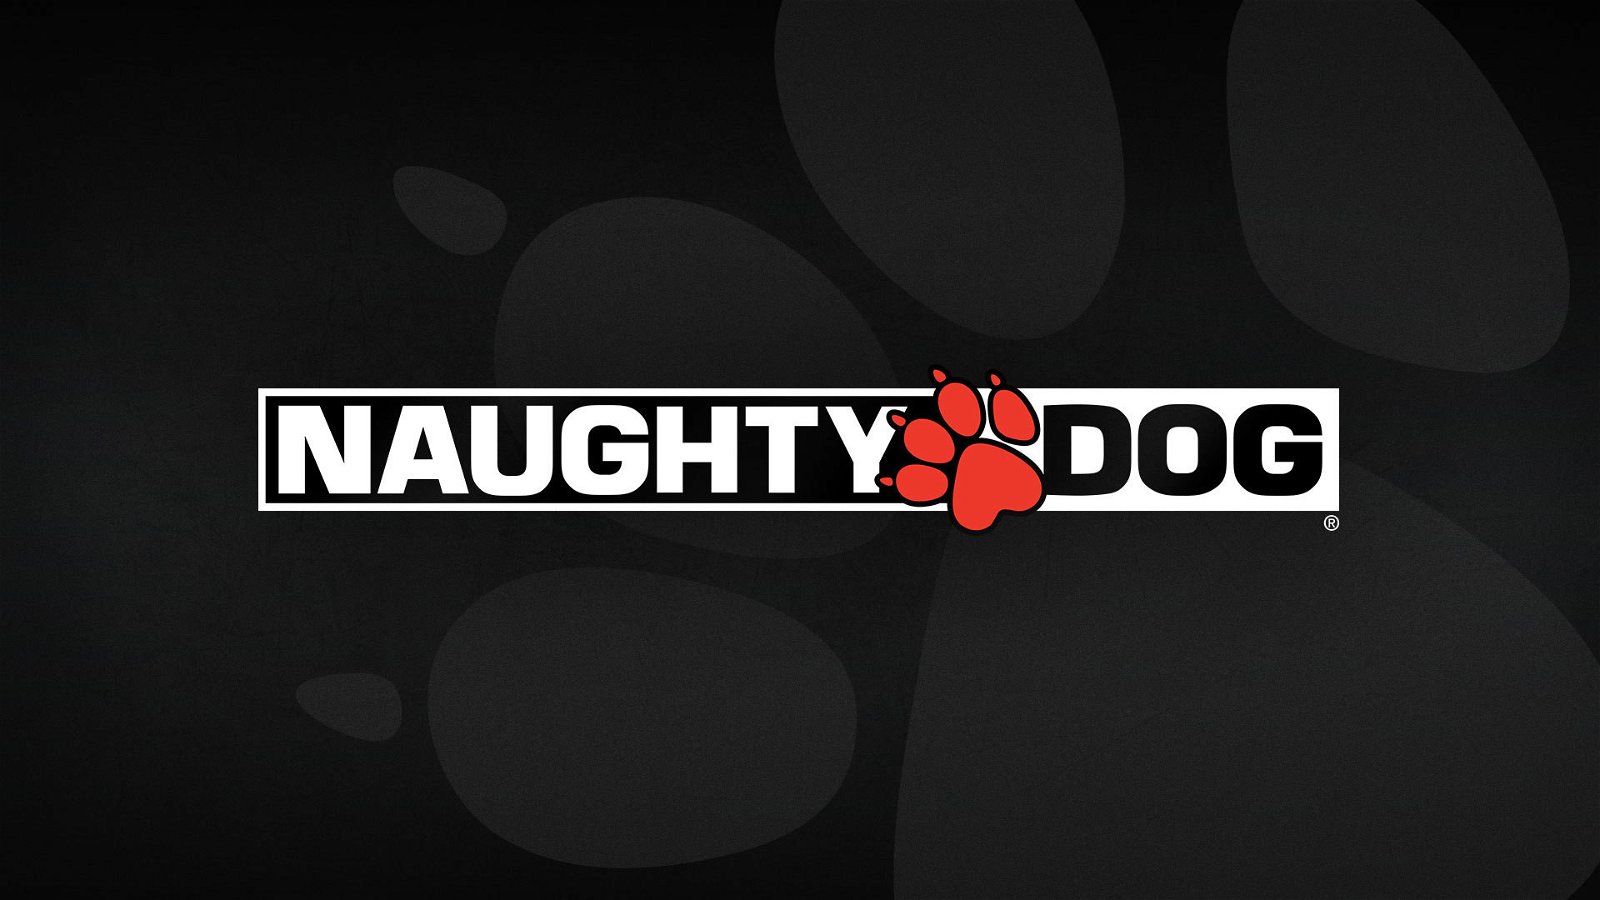 Una star visita Naughty Dog: «Non rivelate nulla di ciò che avete visto!»